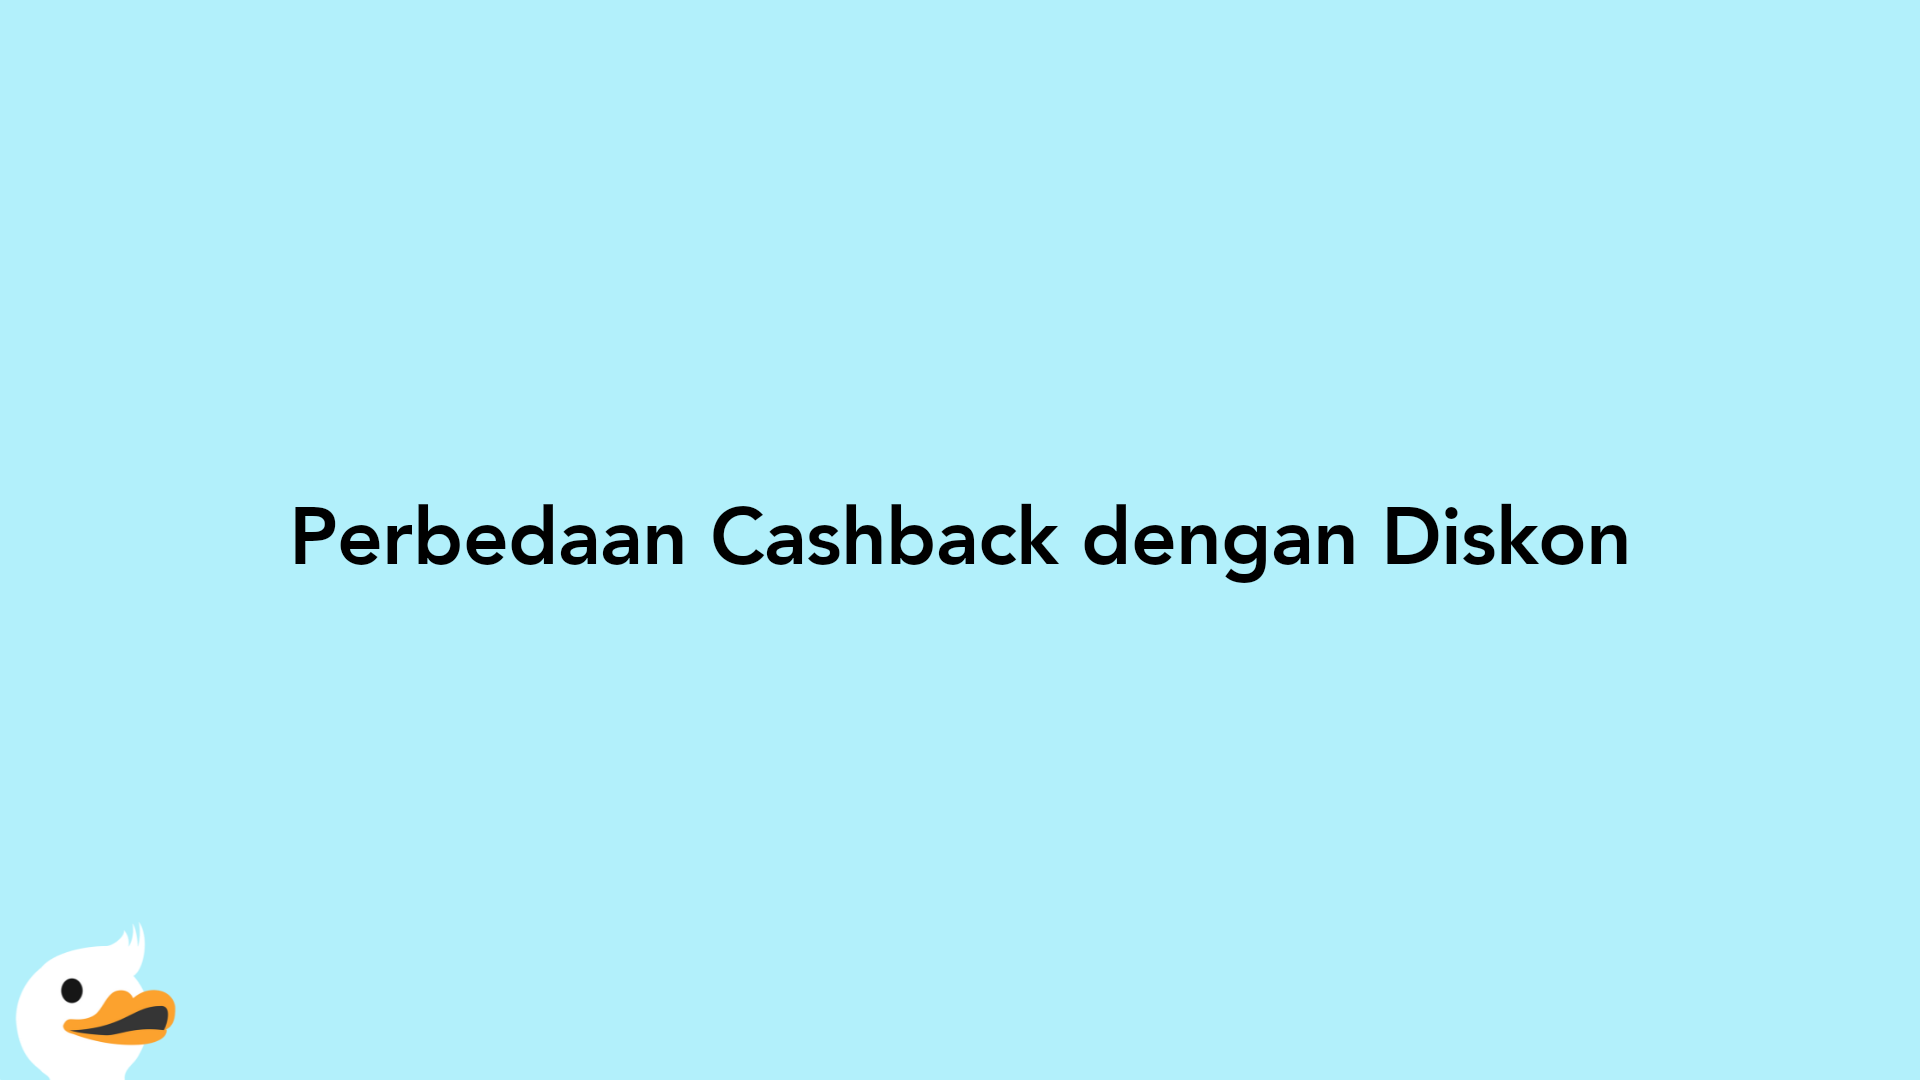 Perbedaan Cashback dengan Diskon